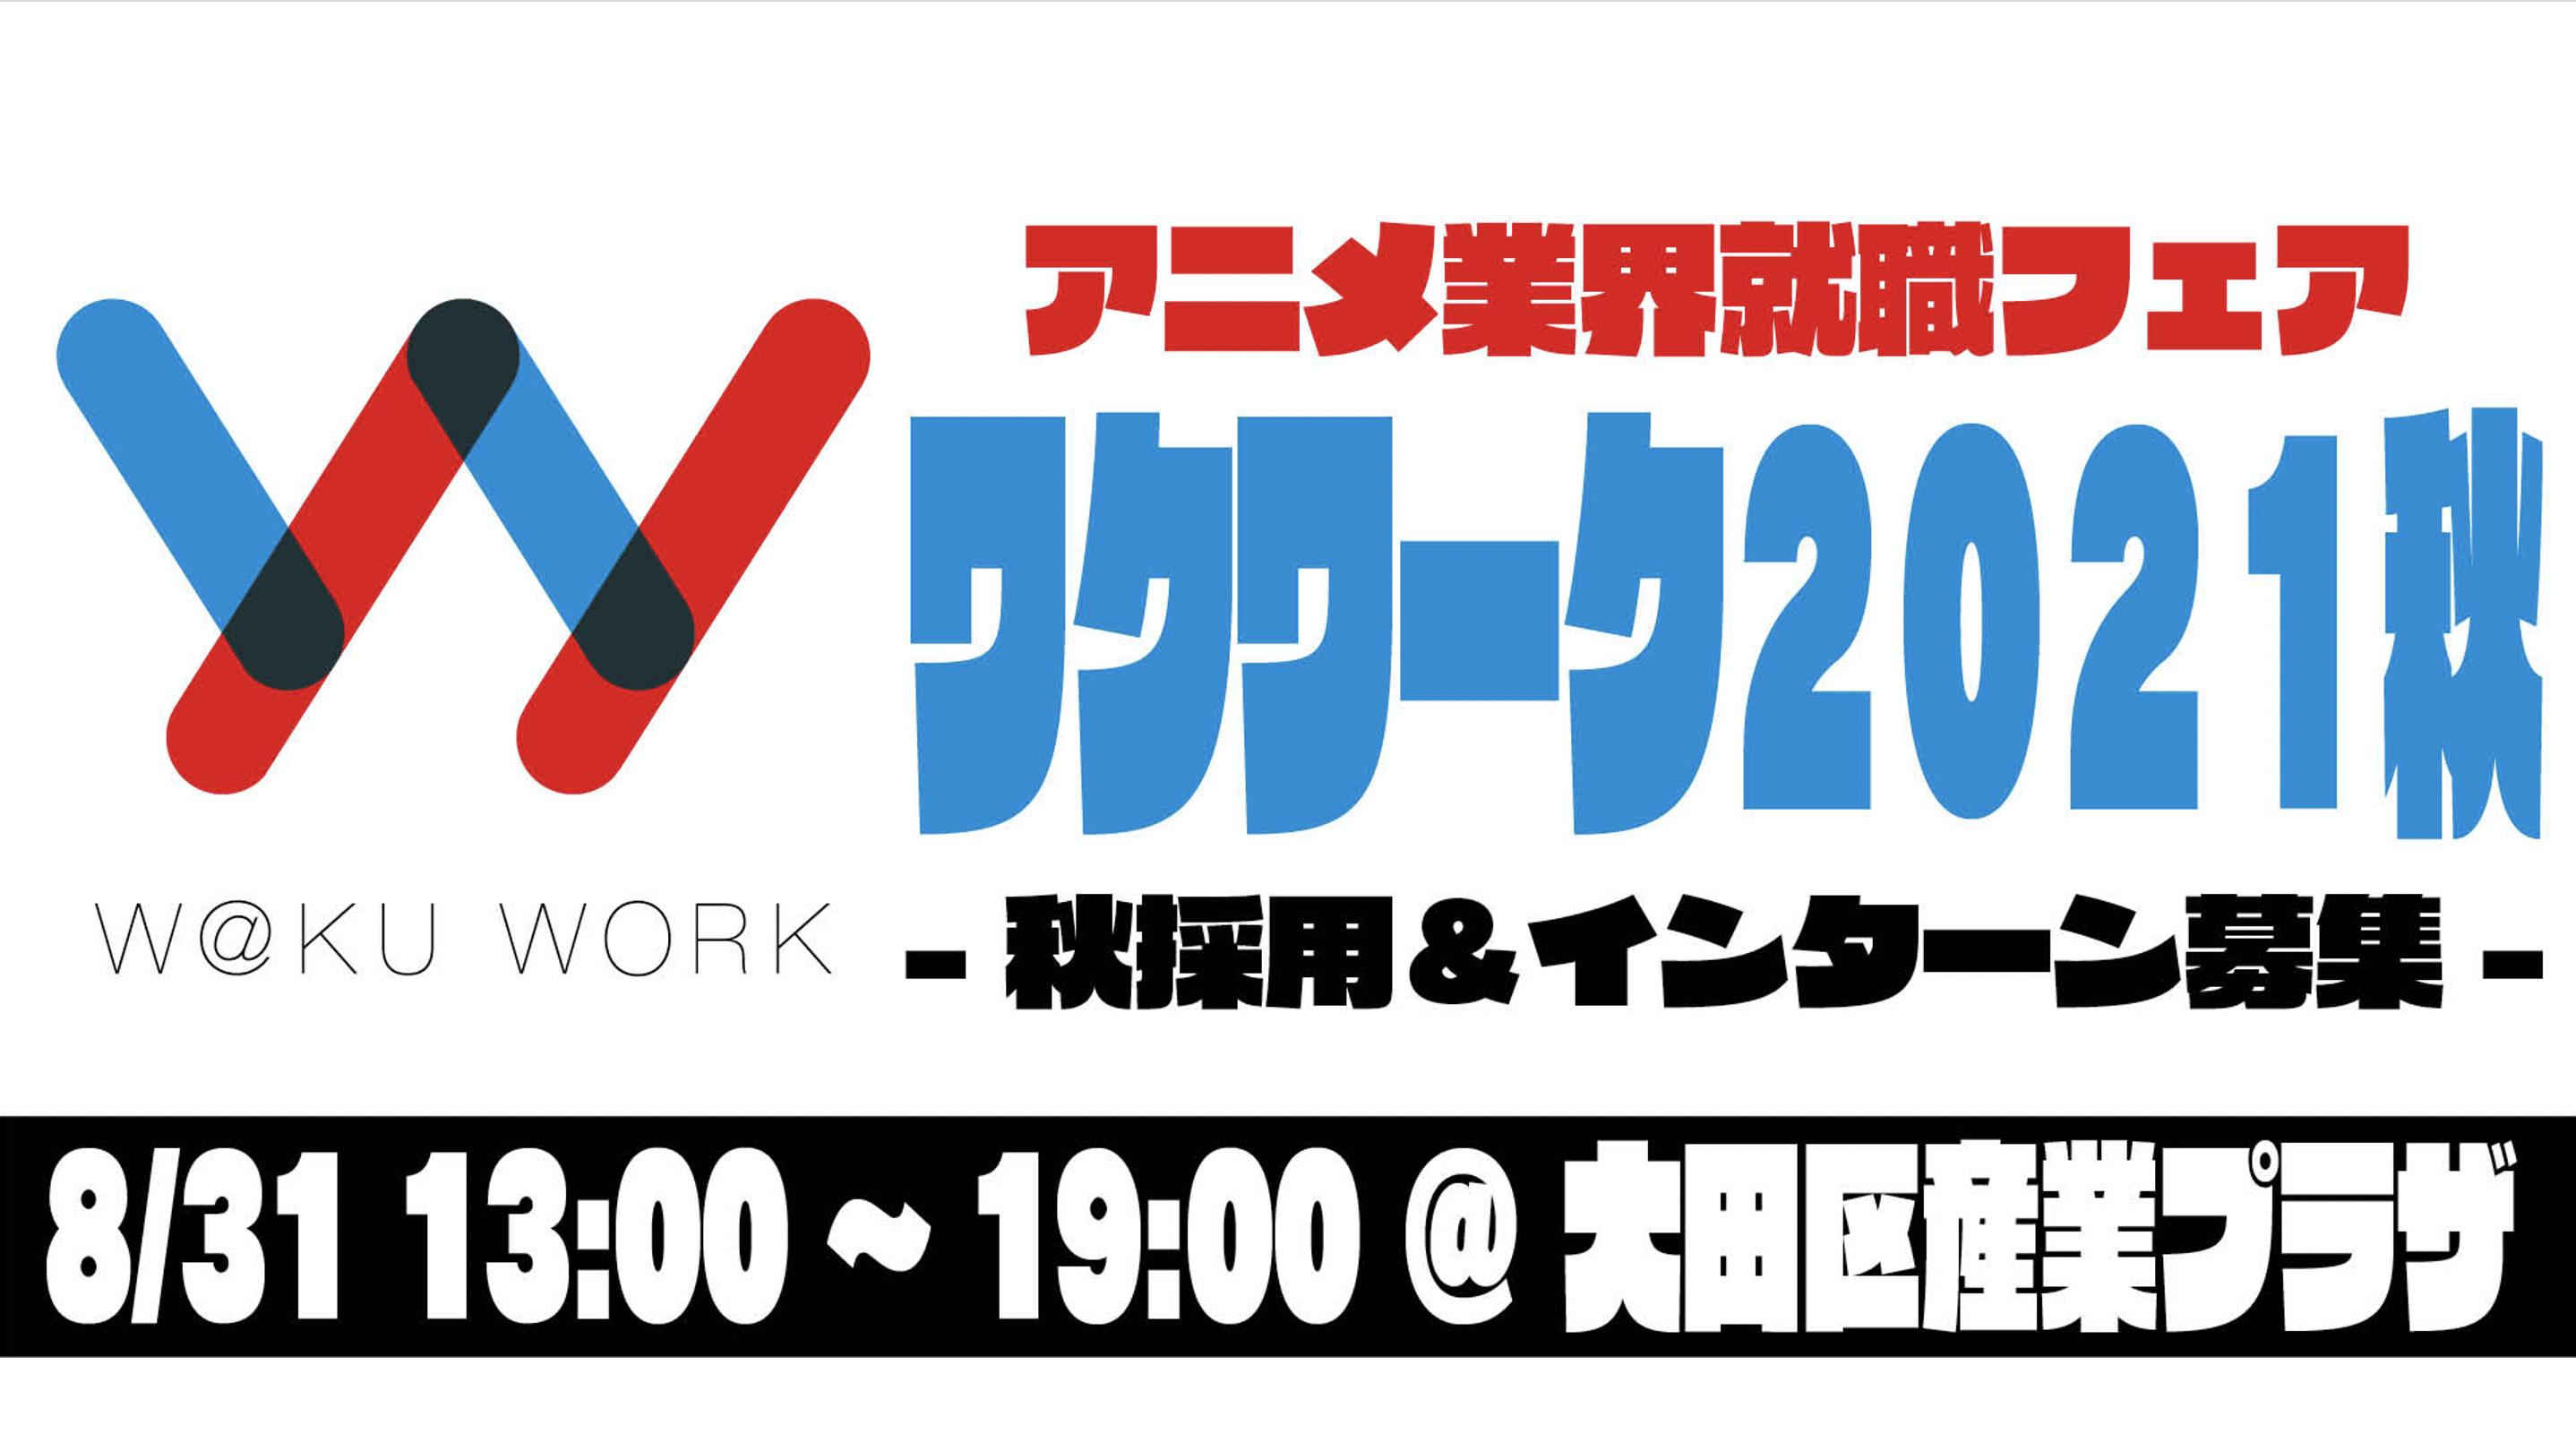 8 31 月 アニメ業界就職フェア ワクワーク21秋 開催決定 W Ku Work スキをシゴトに